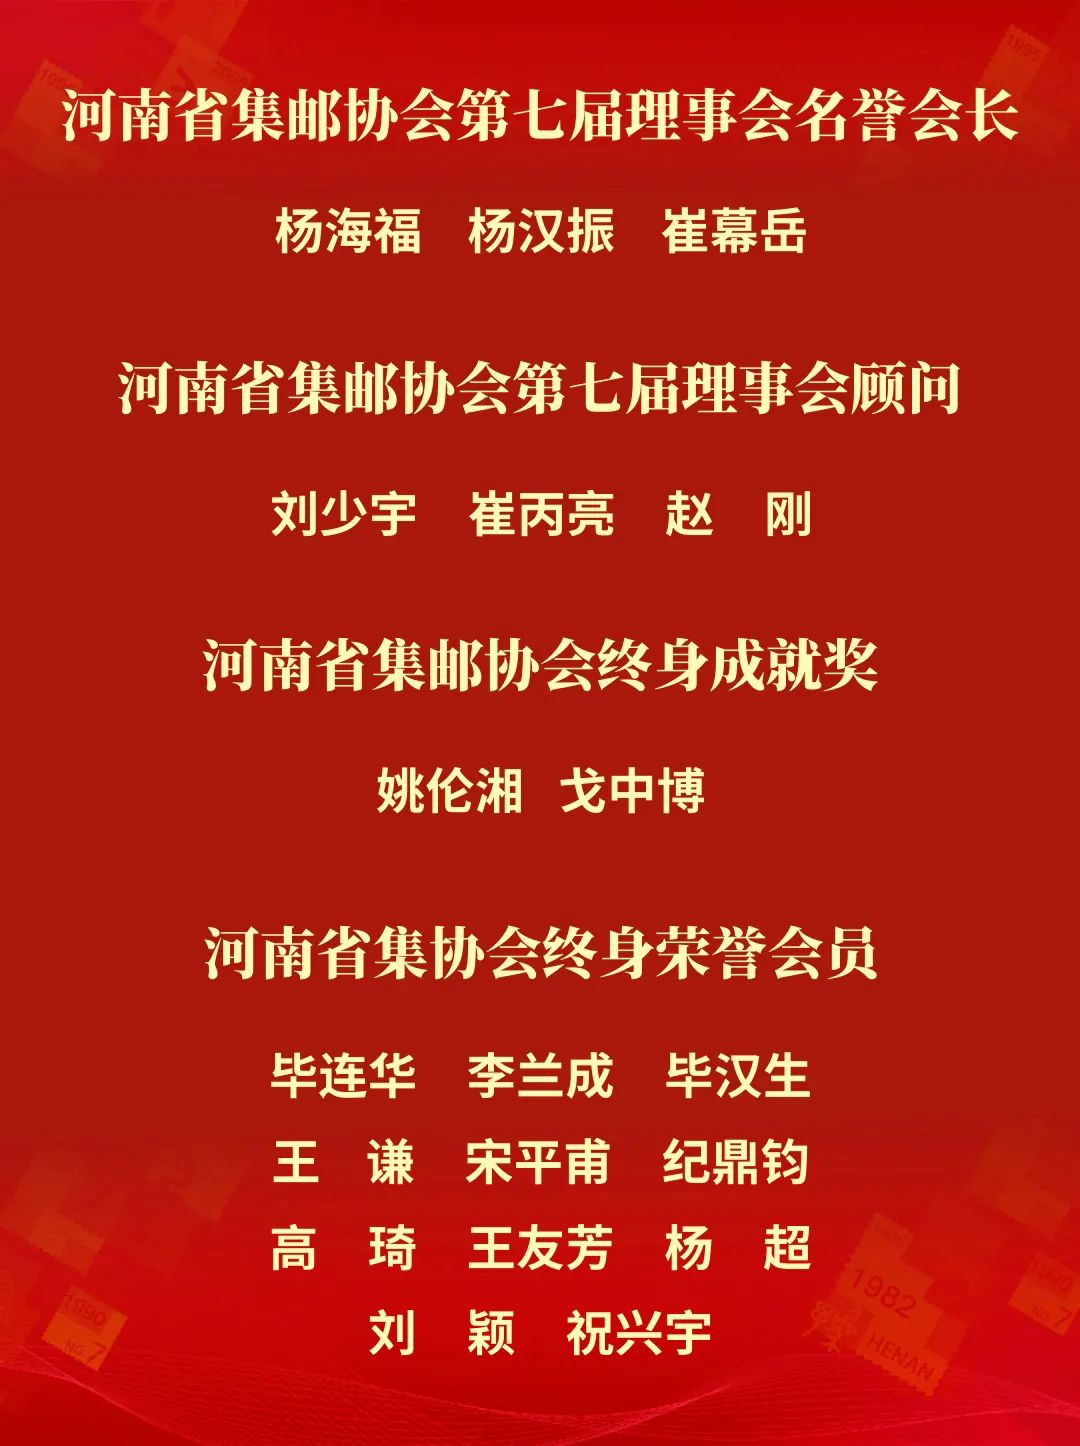 河南省集邮协会第七次代表大会在郑召开